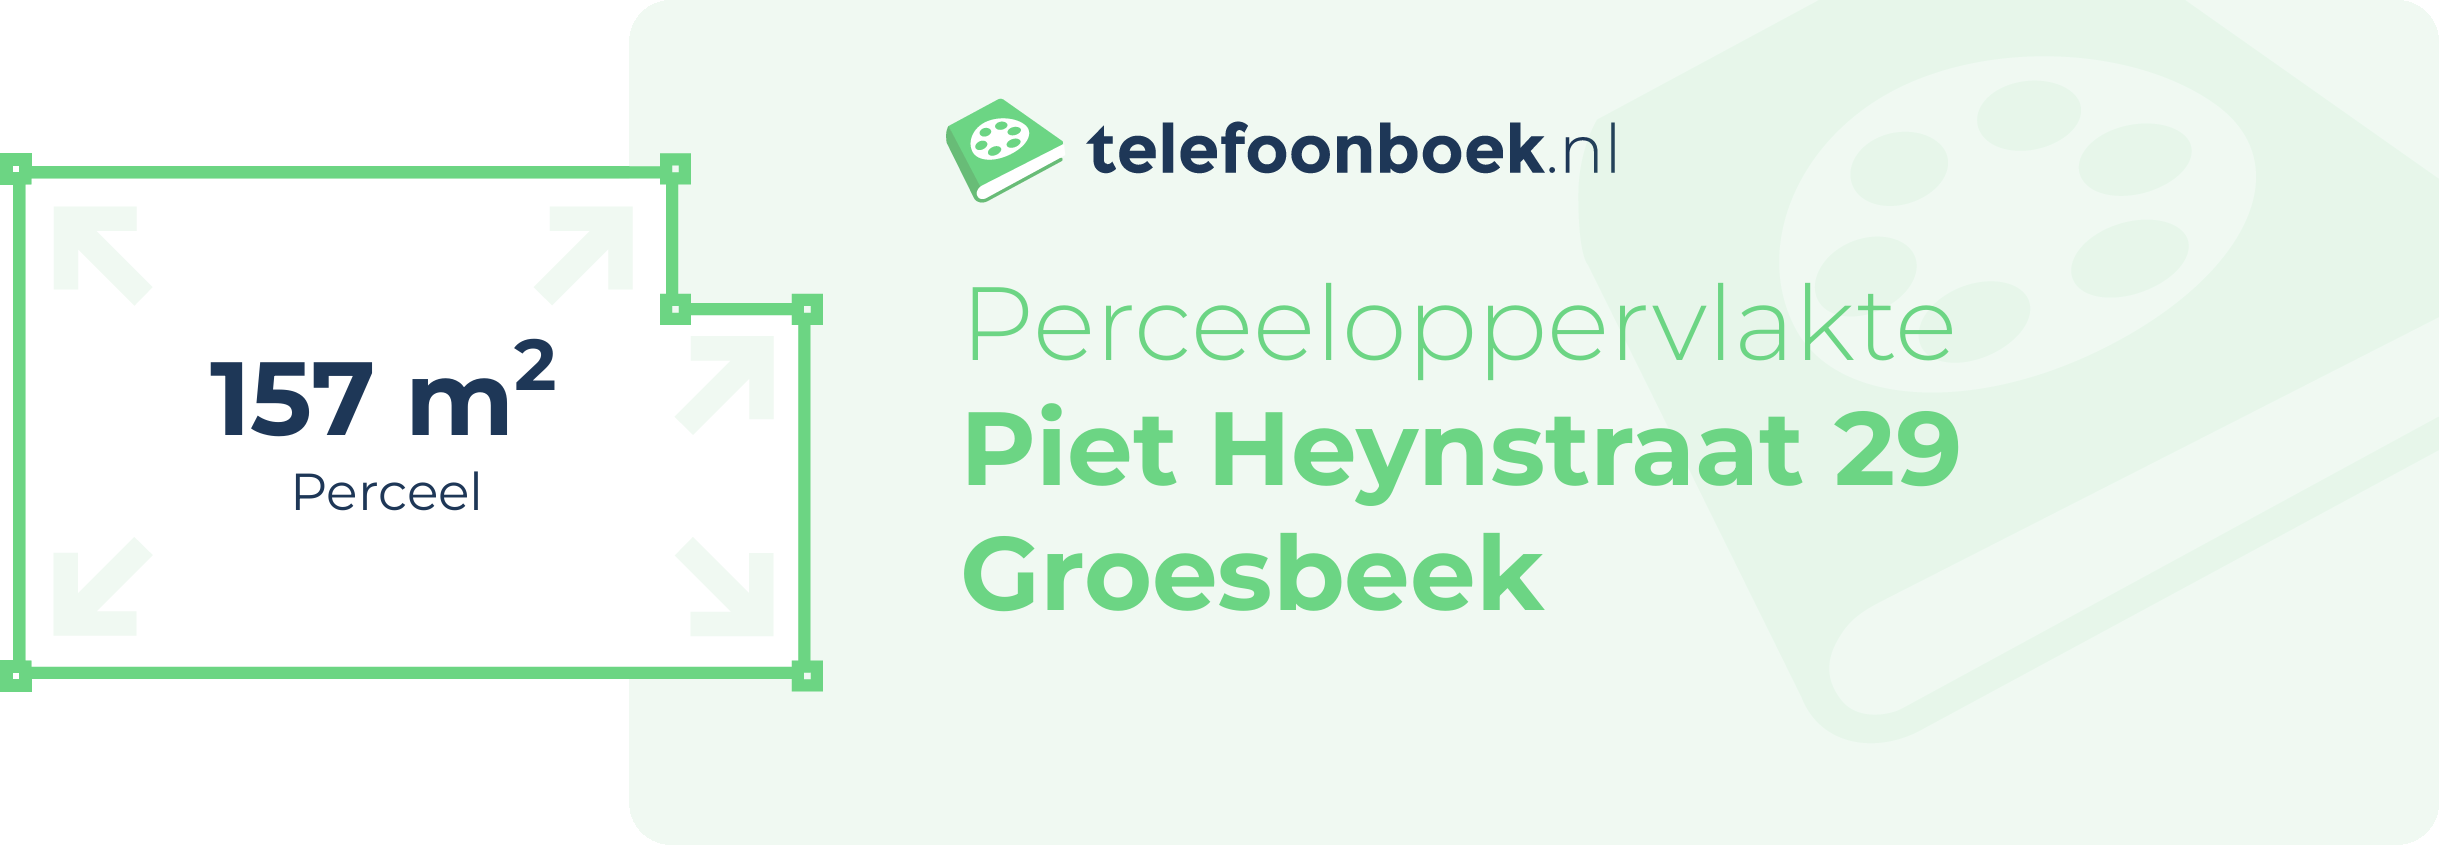 Perceeloppervlakte Piet Heynstraat 29 Groesbeek